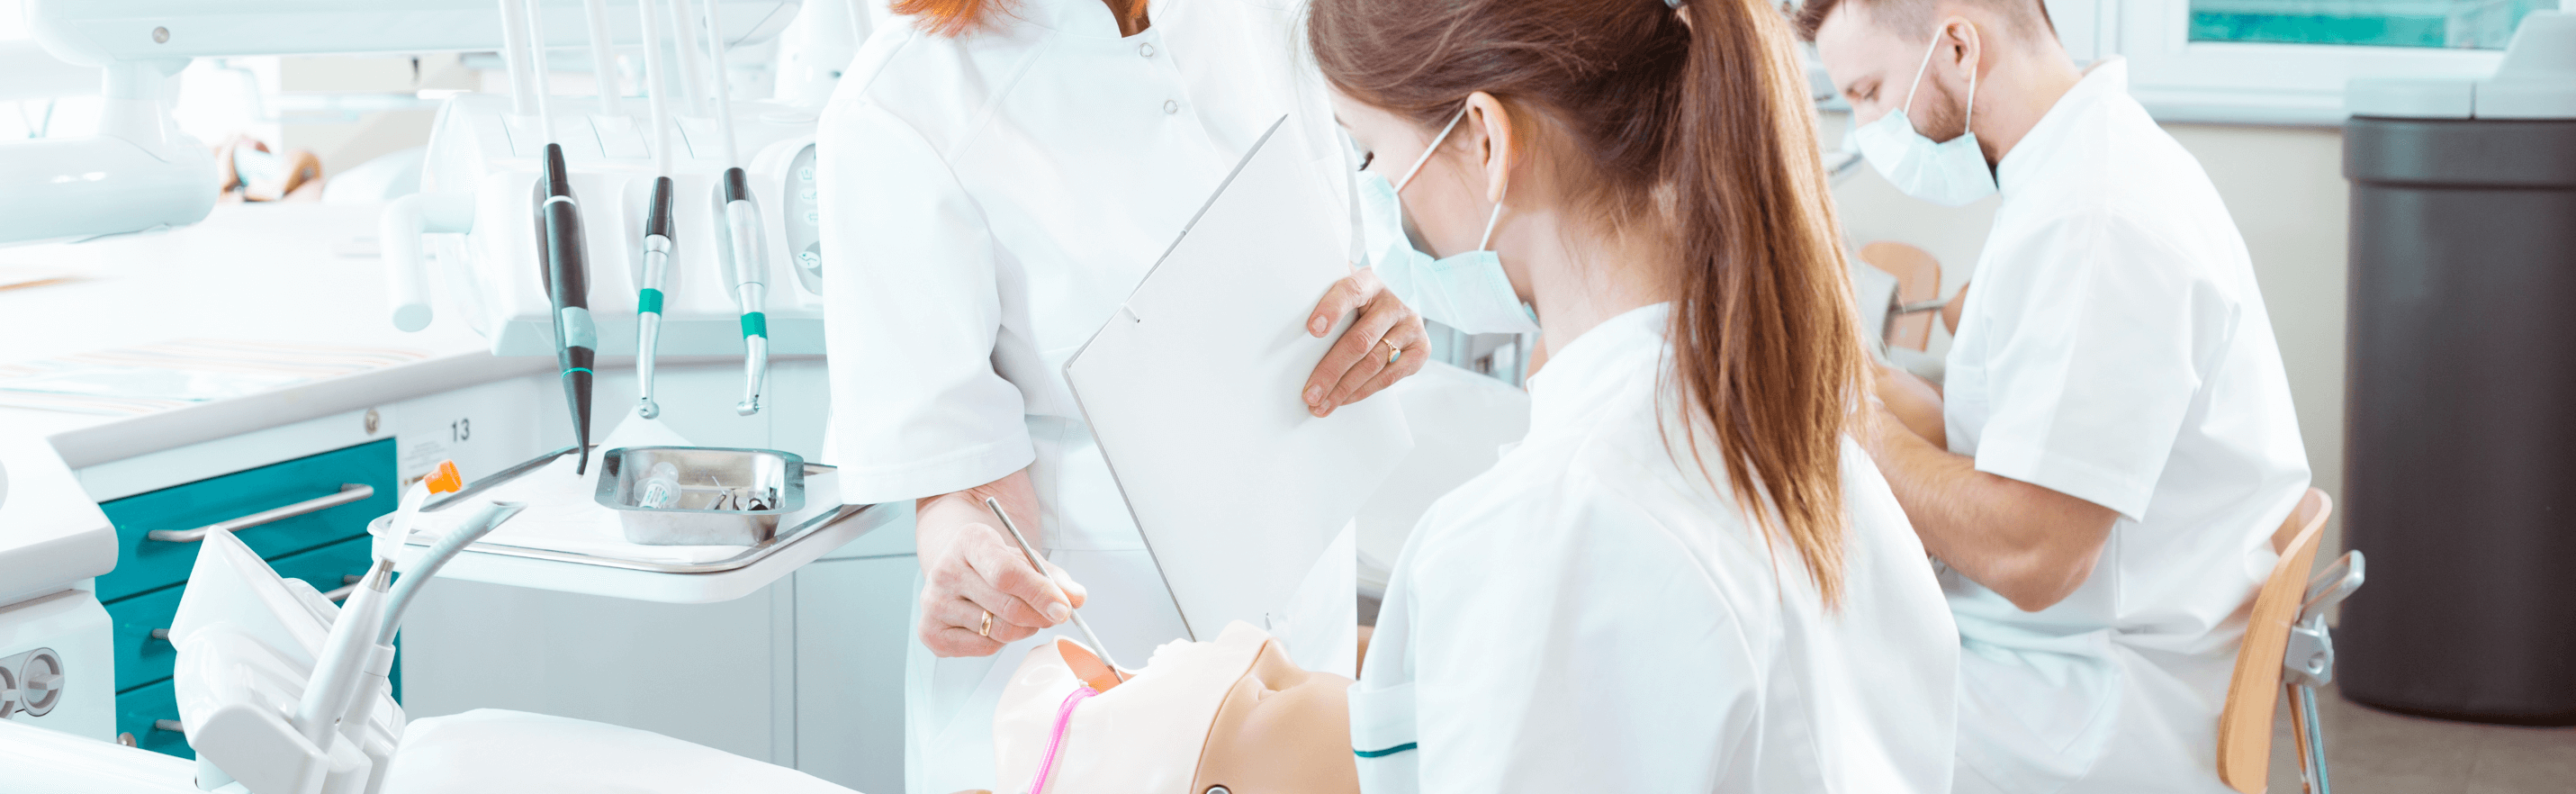 female dentist examining patient